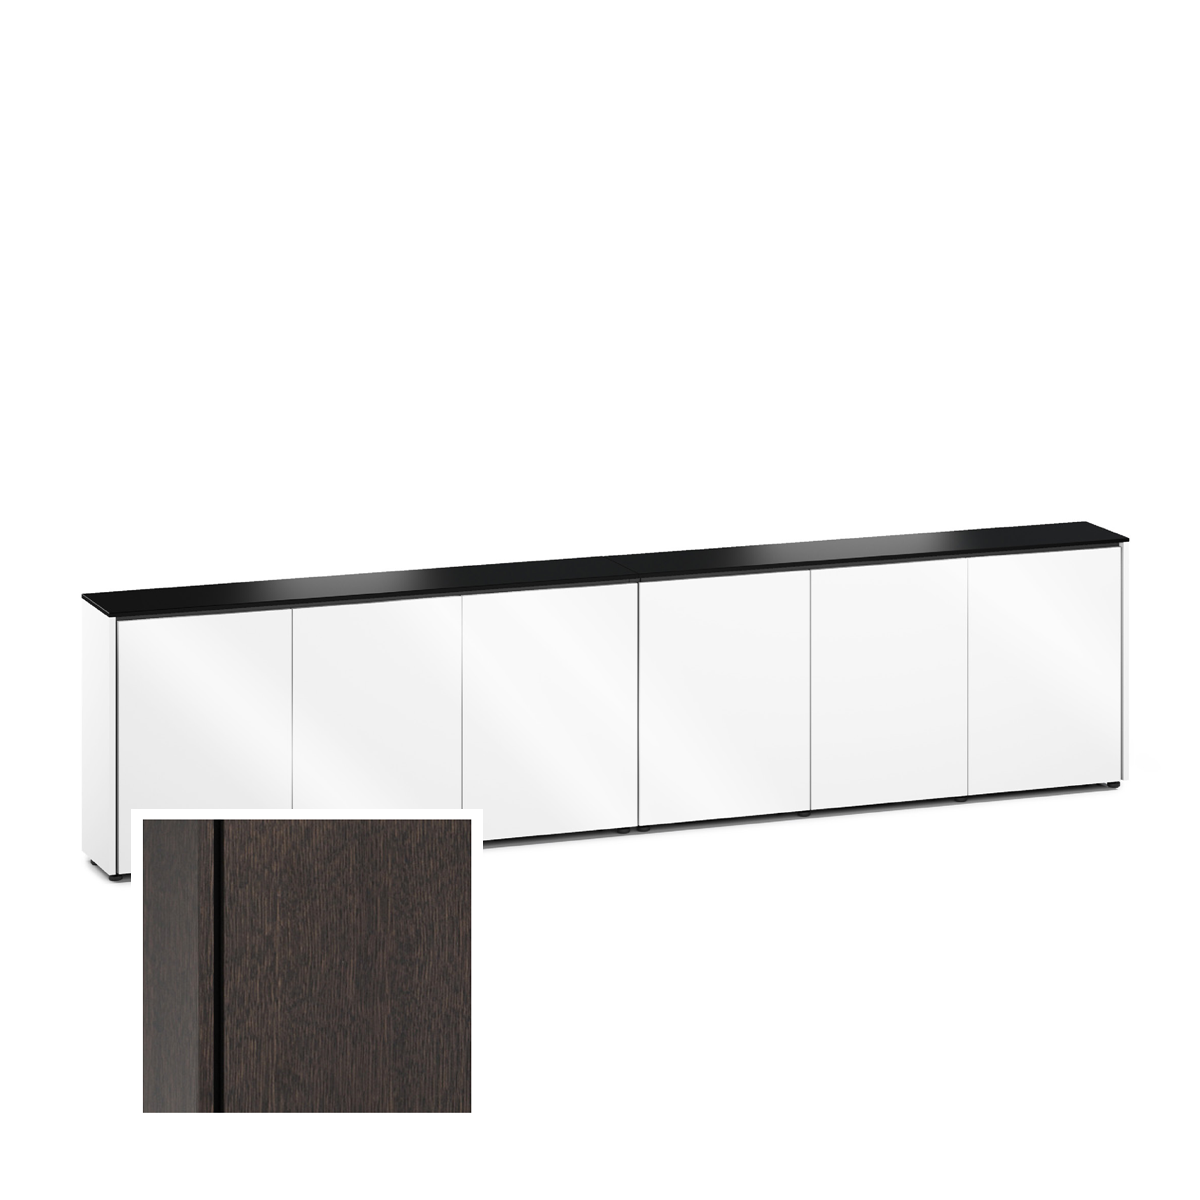 D1/367A/SN/WO 6 Bay Low-Profile, Wall Cabinet, Sienna- Wenge Oak